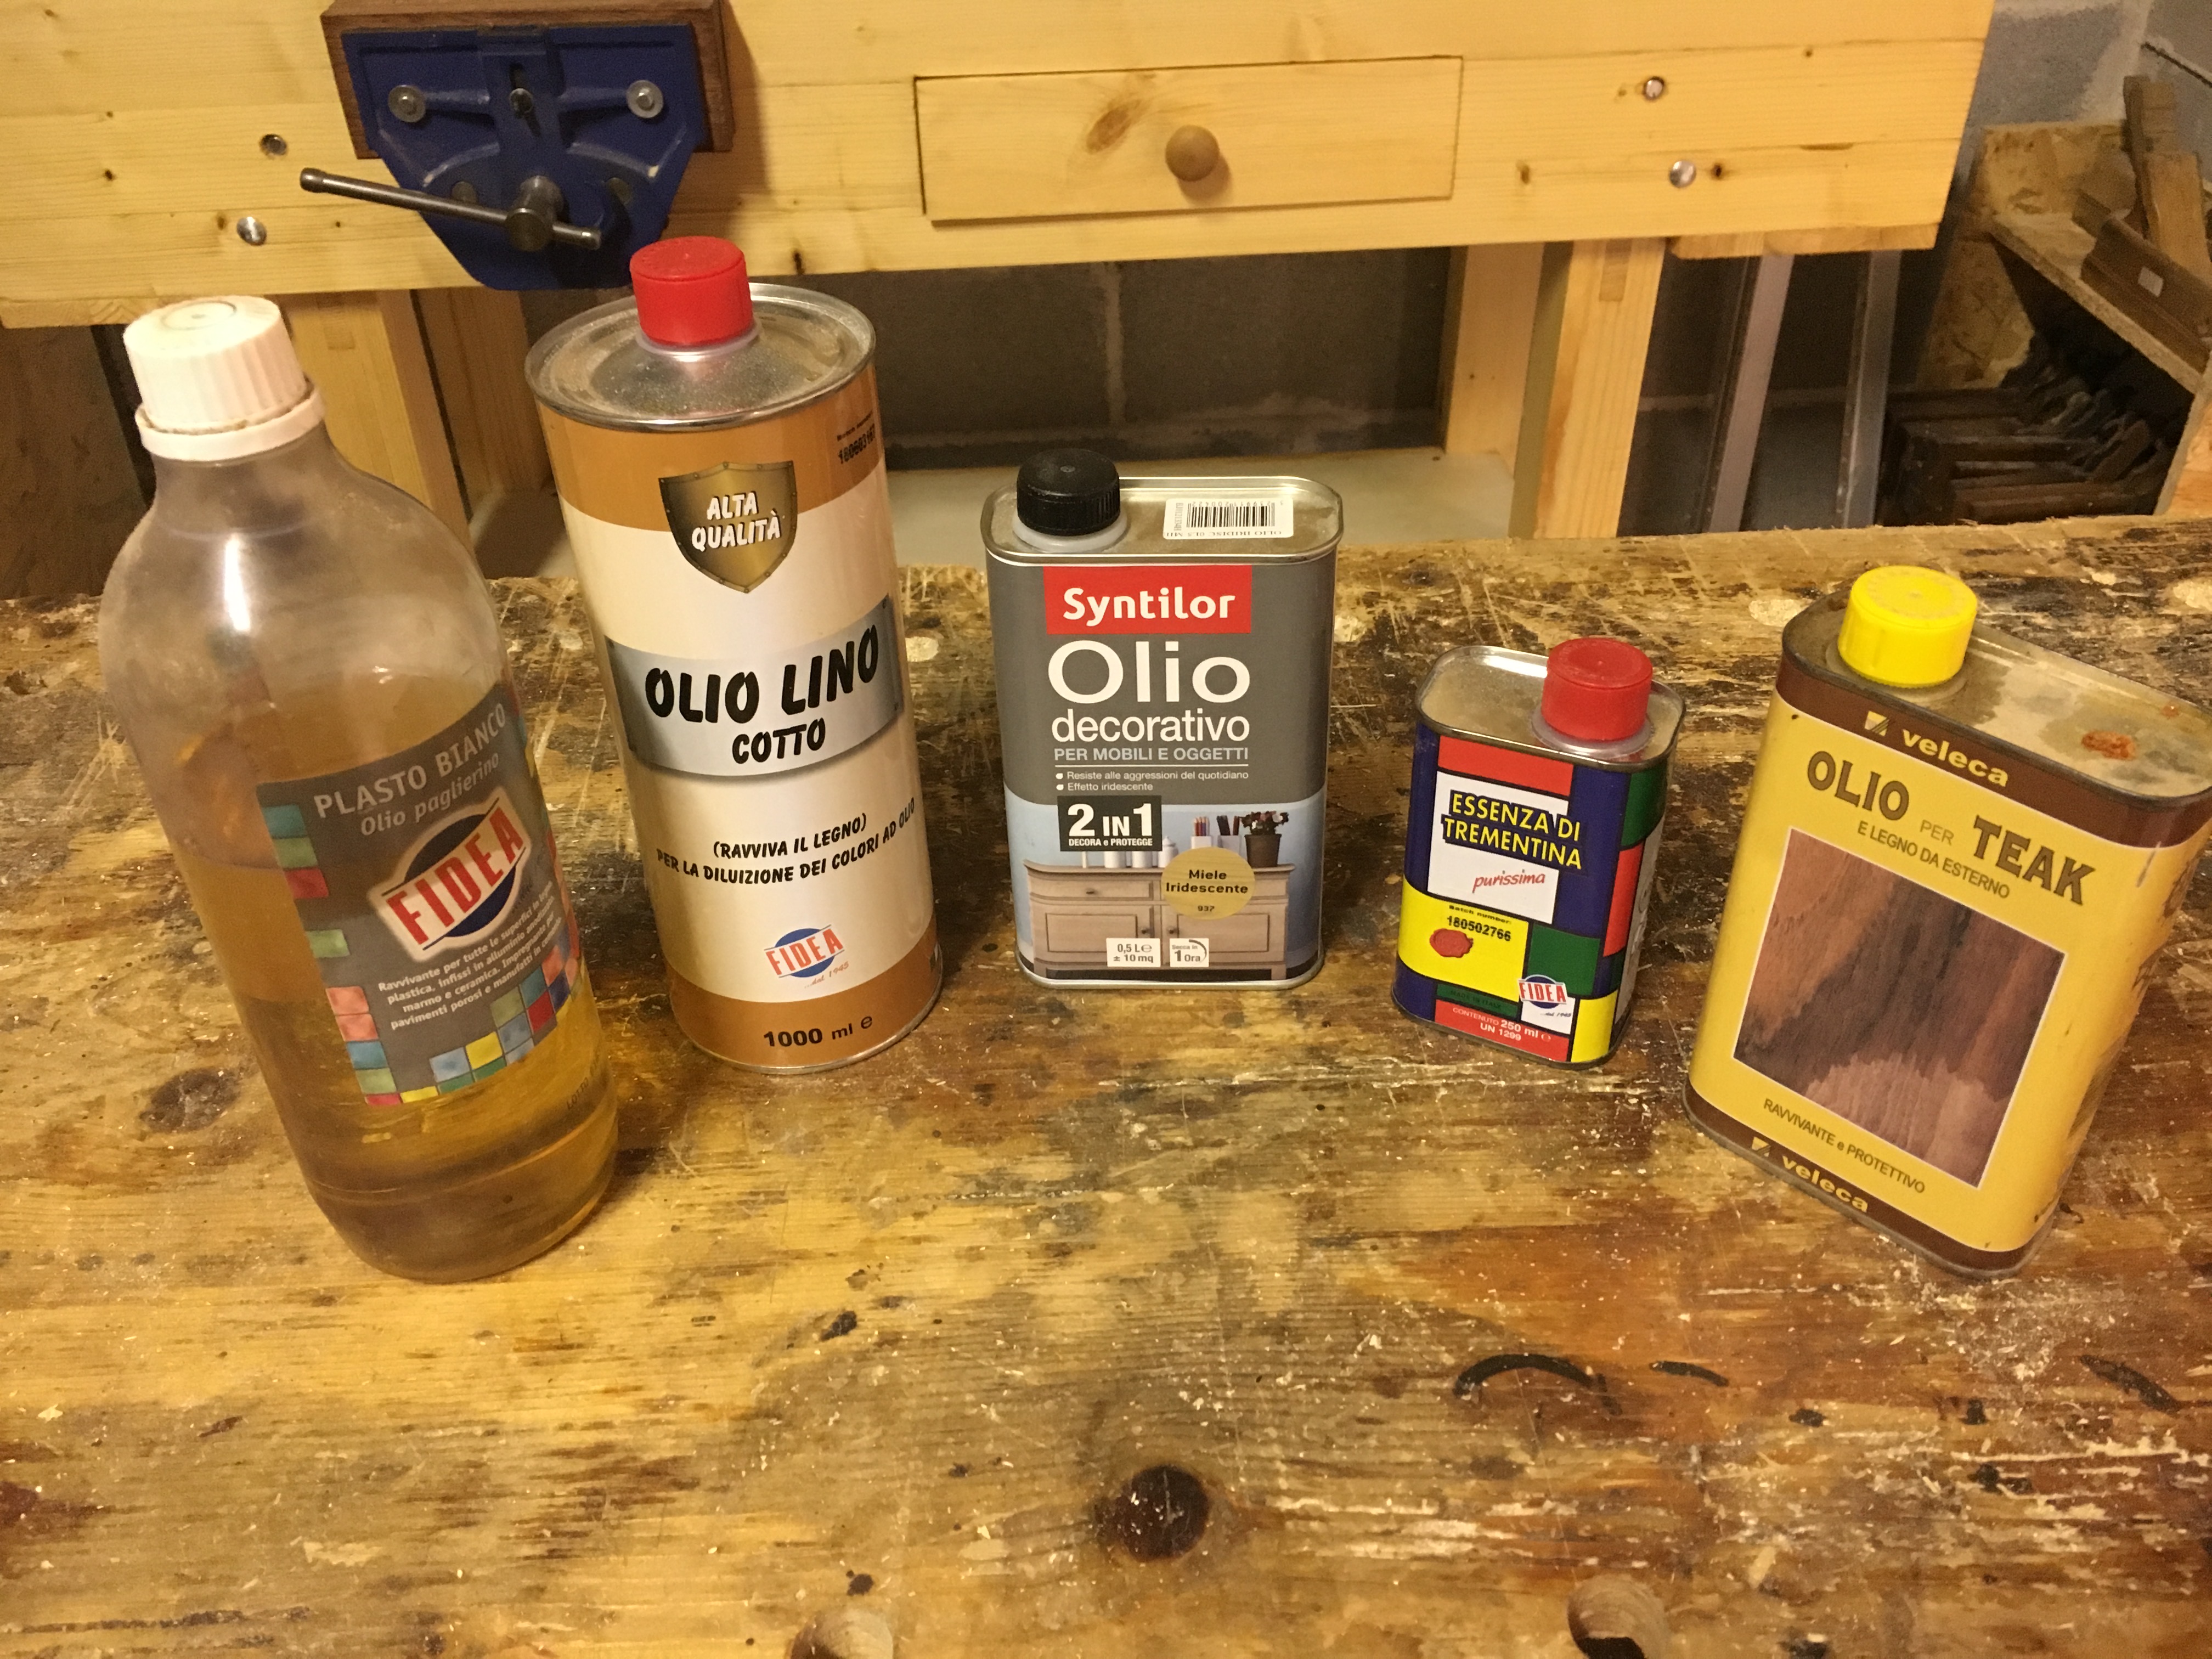 Come usare l'olio di lino cotto - artedelrestauro.it